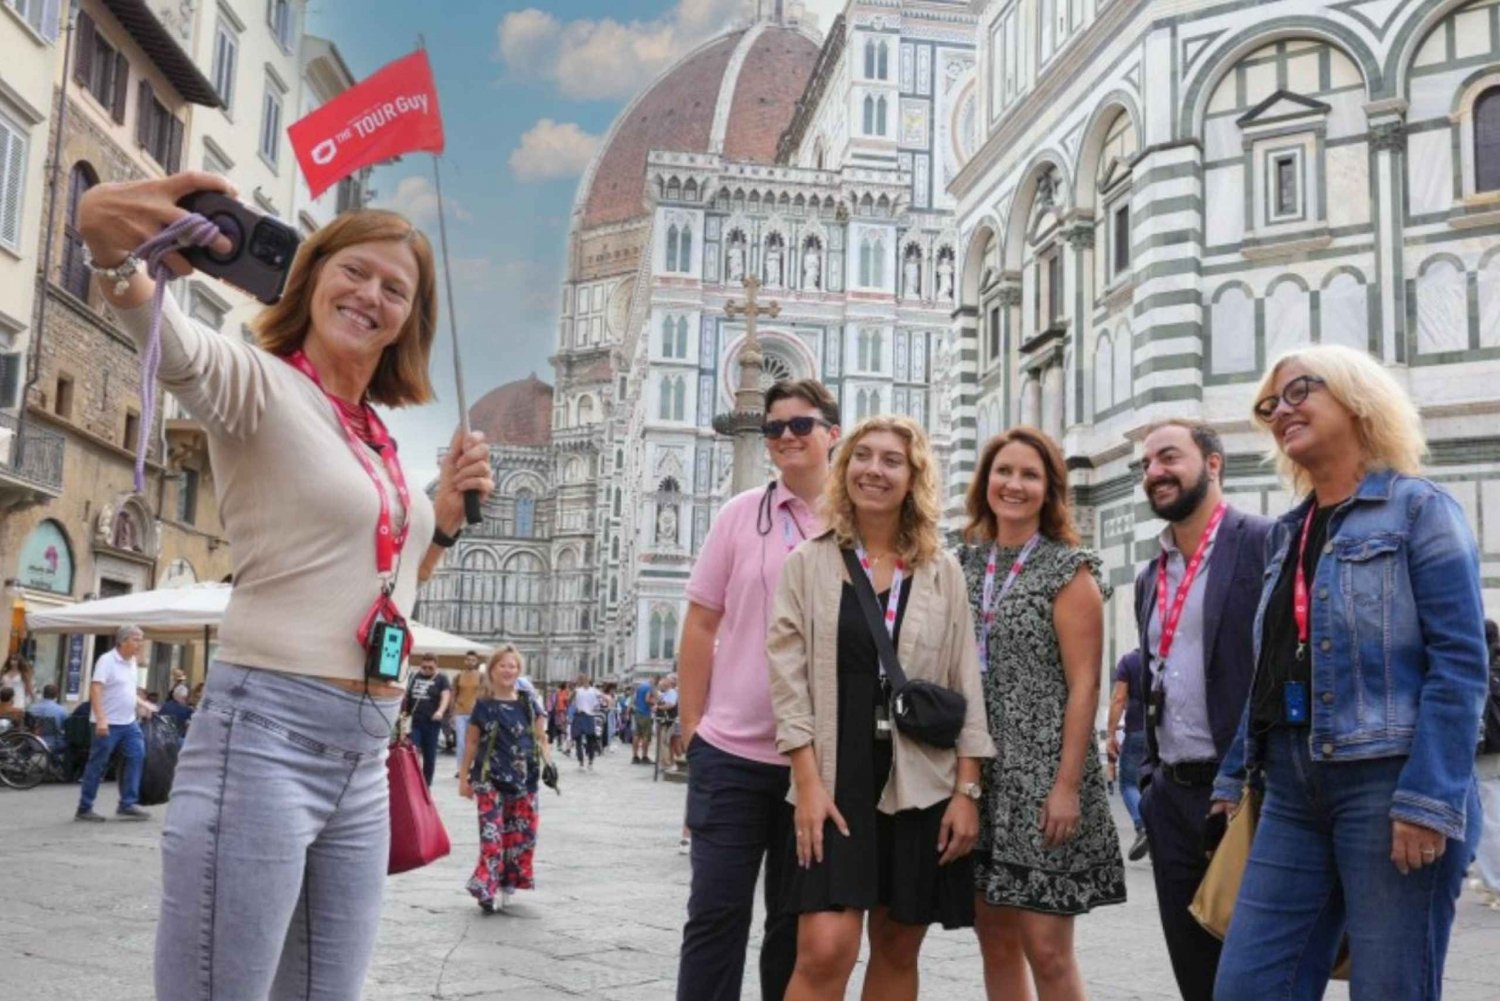 Firenze: Guidet omvisning i domkirken med valgfri kuppelbestigning